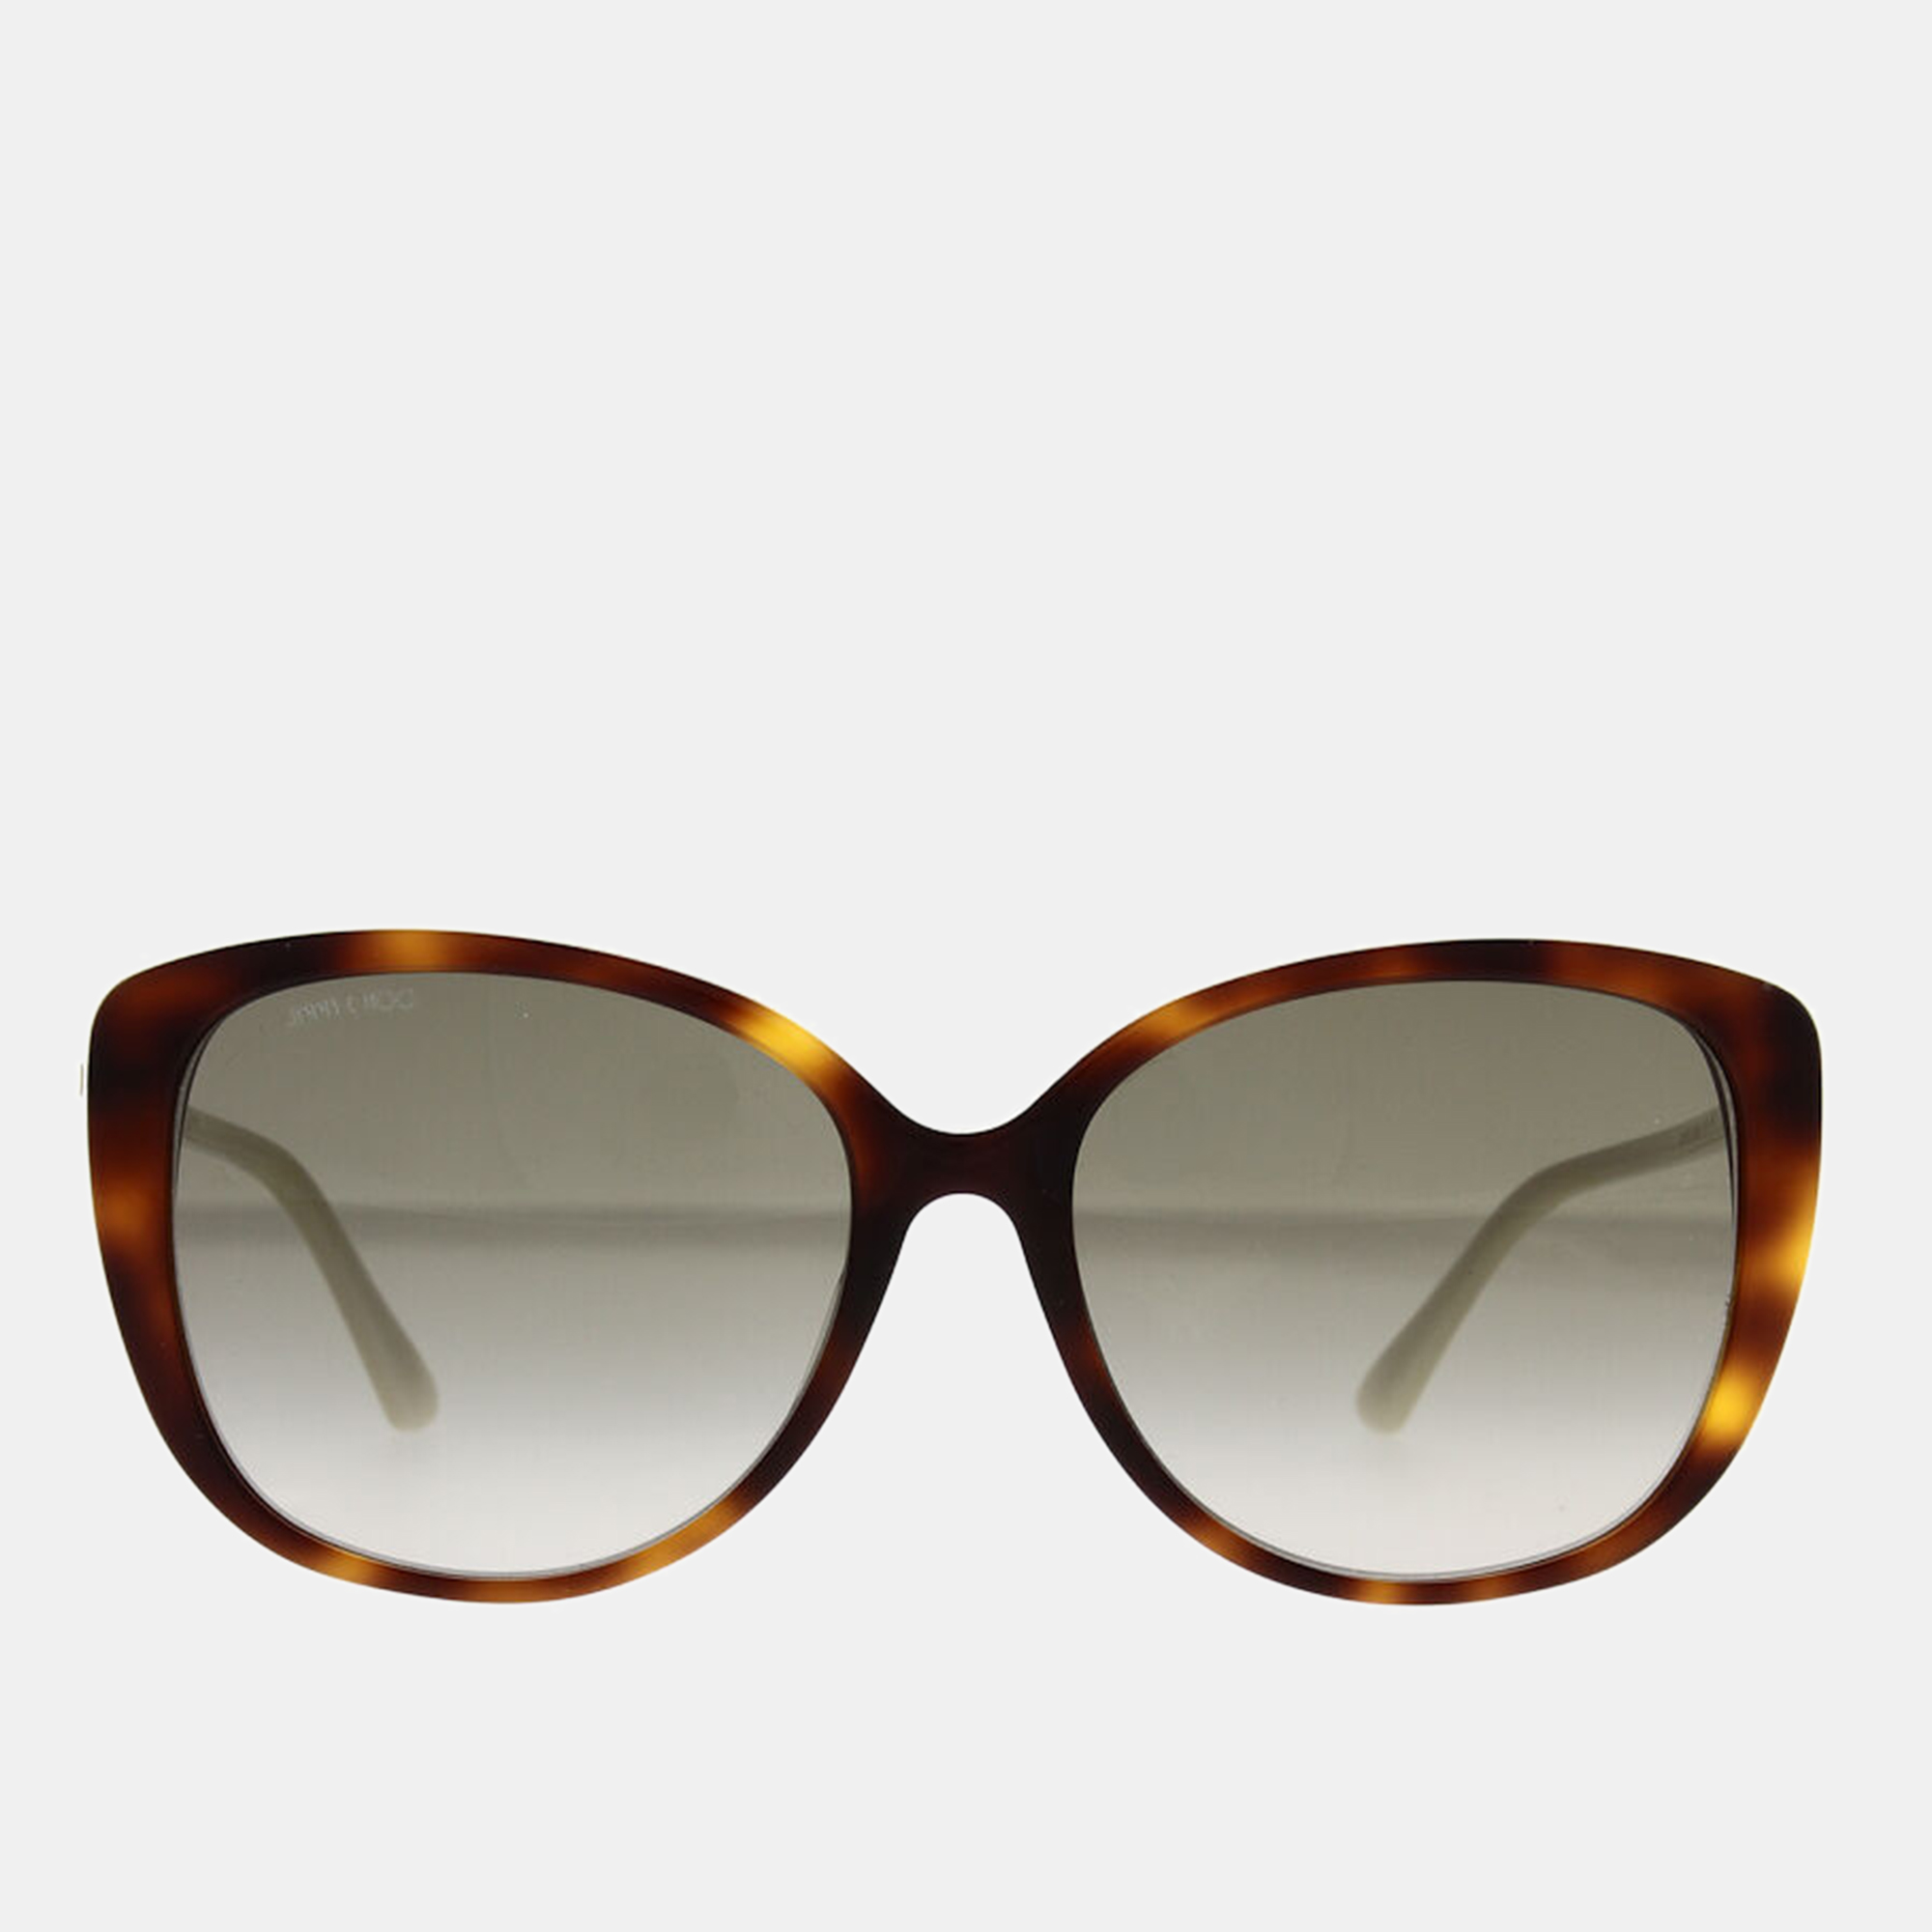 Jimmy choo grey gold shelby cat eye women's sunglasses 57mm